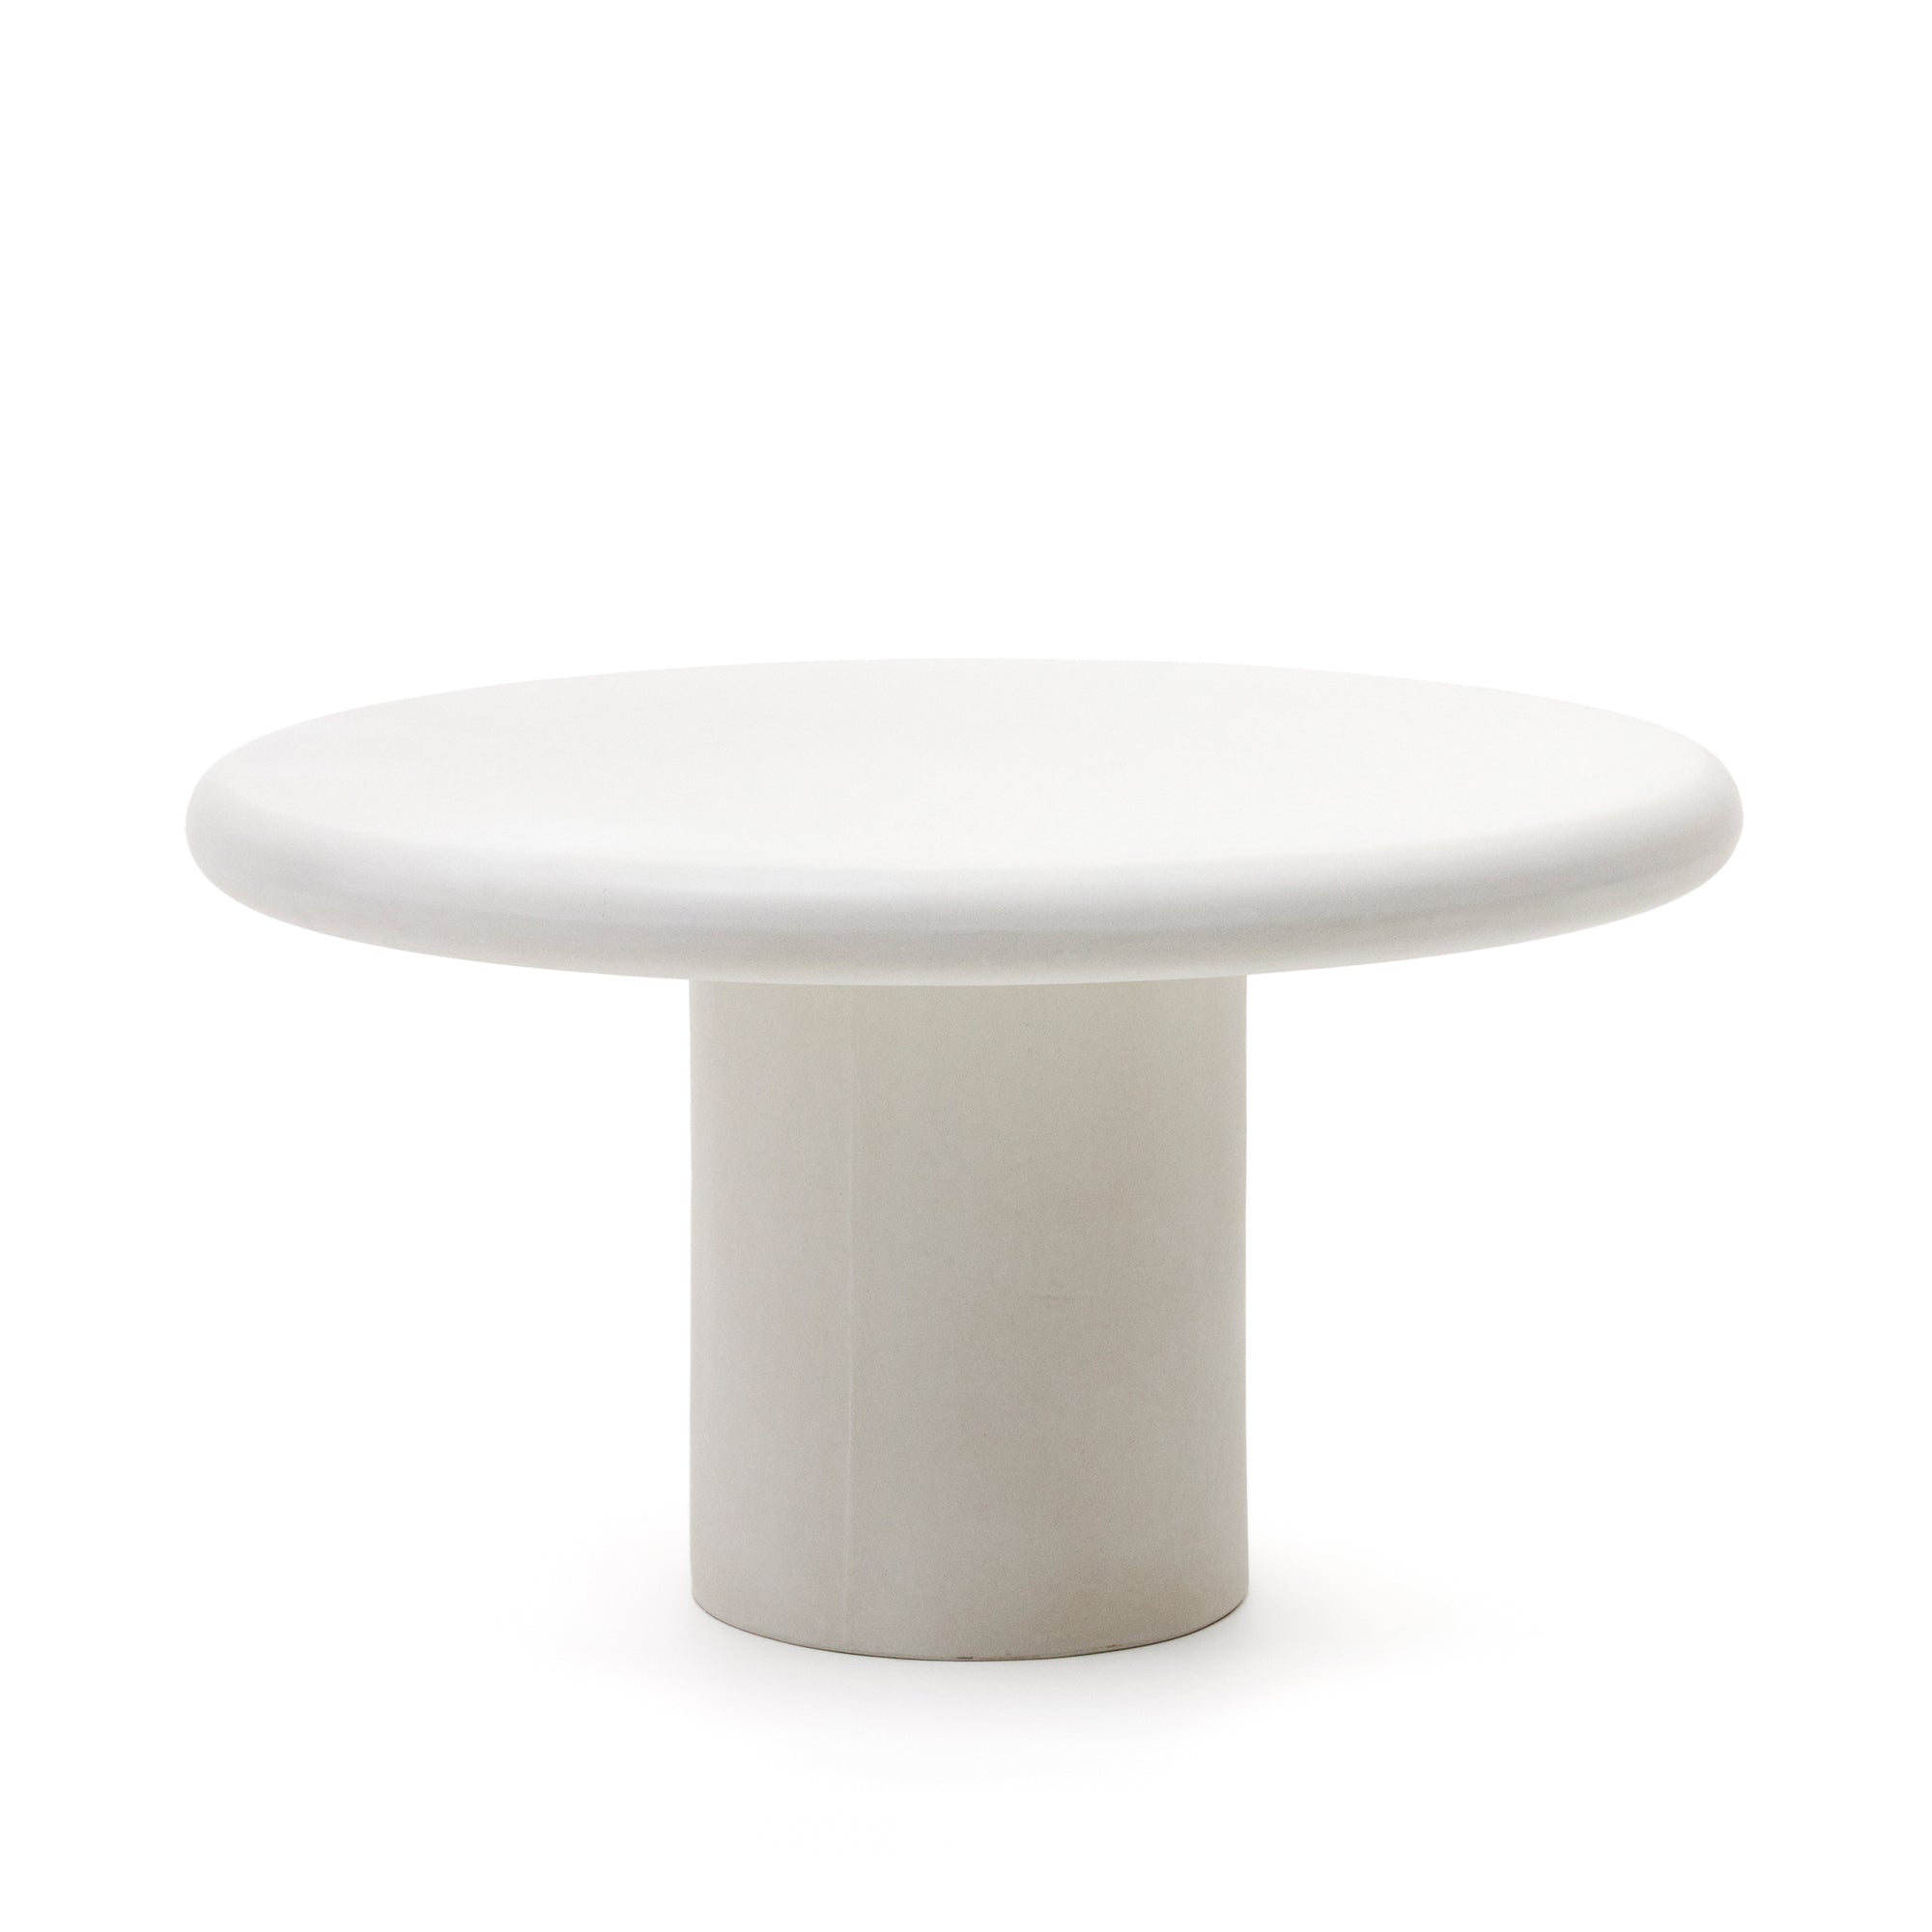 Addaia fehér cement, kerek asztal, Ø140 cm